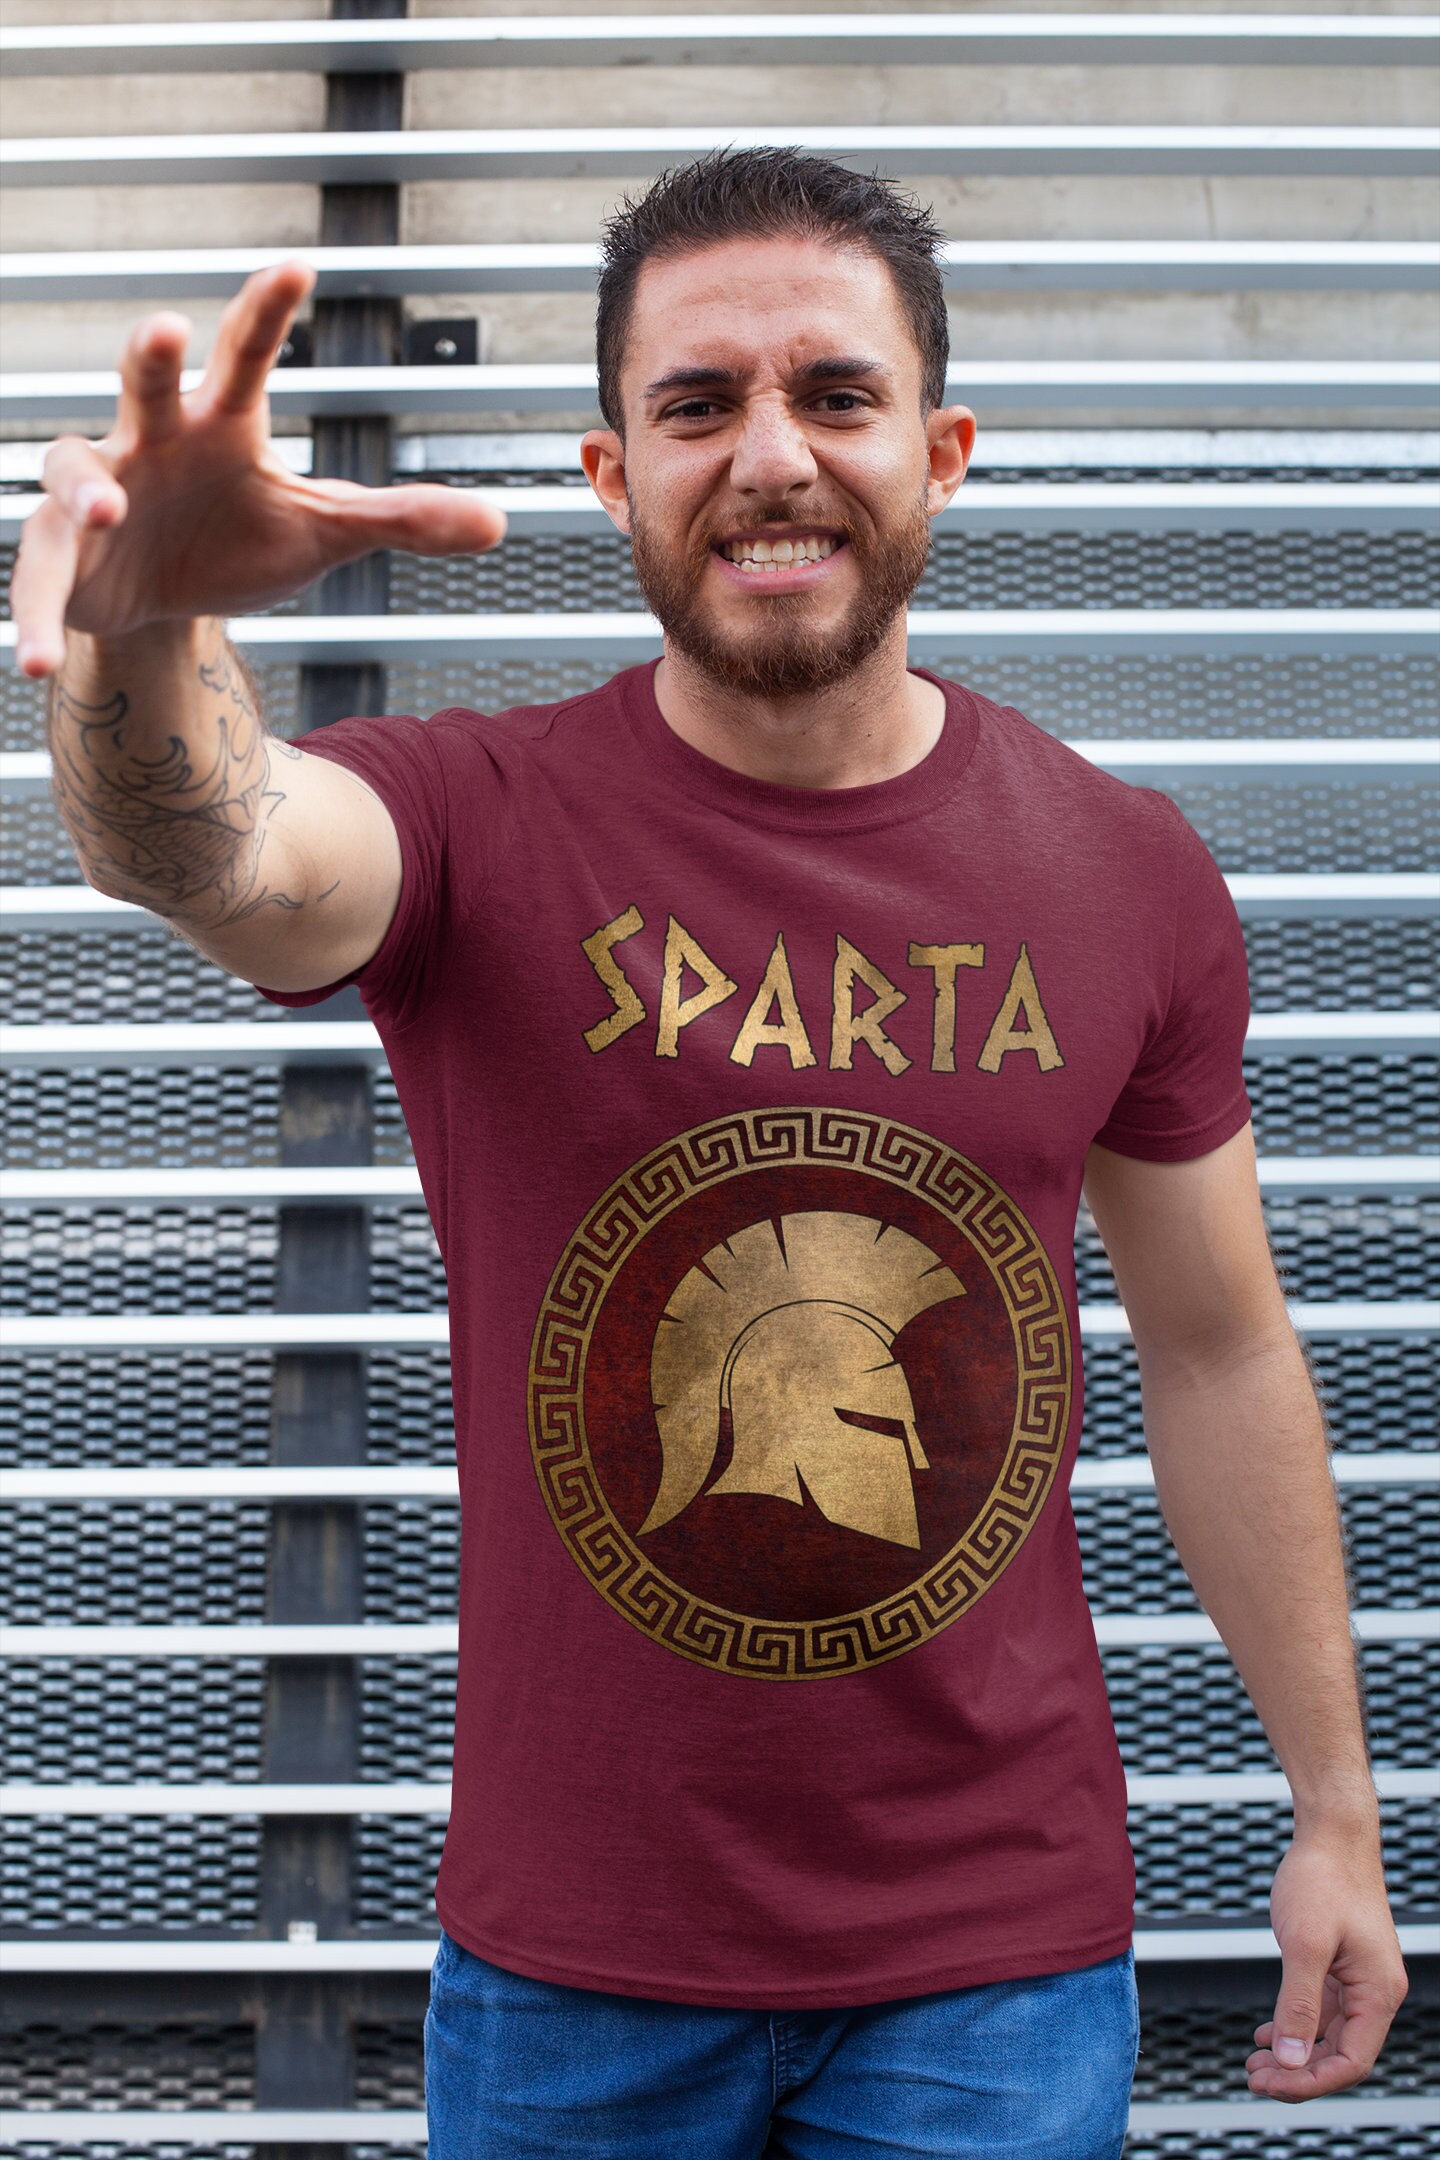 This is Sparta - Sparta movie, King Leonidas Gerard Butler Shirt, Hoodie,  Sweatshirt - FridayStuff